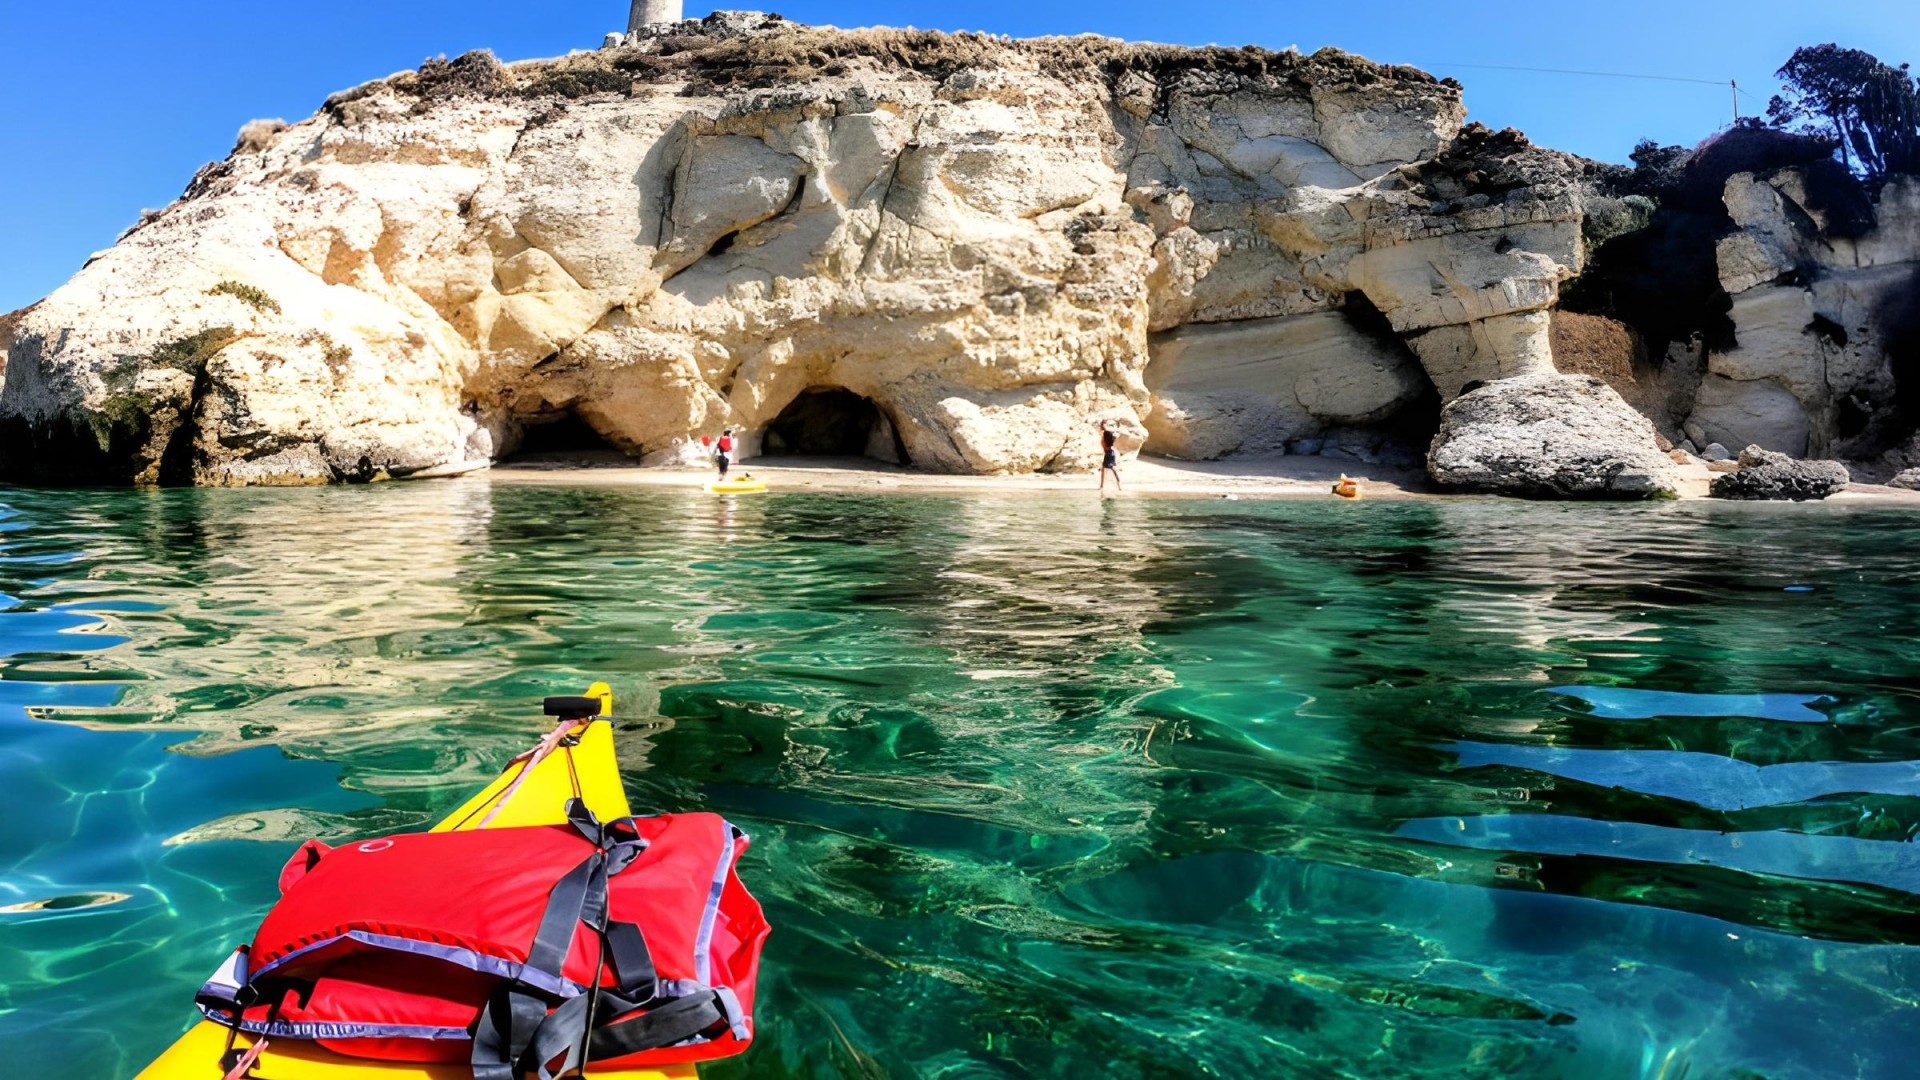 Magico Tour alla Sella del Diavolo di Cagliari, esplora la costa sarda da un kayak